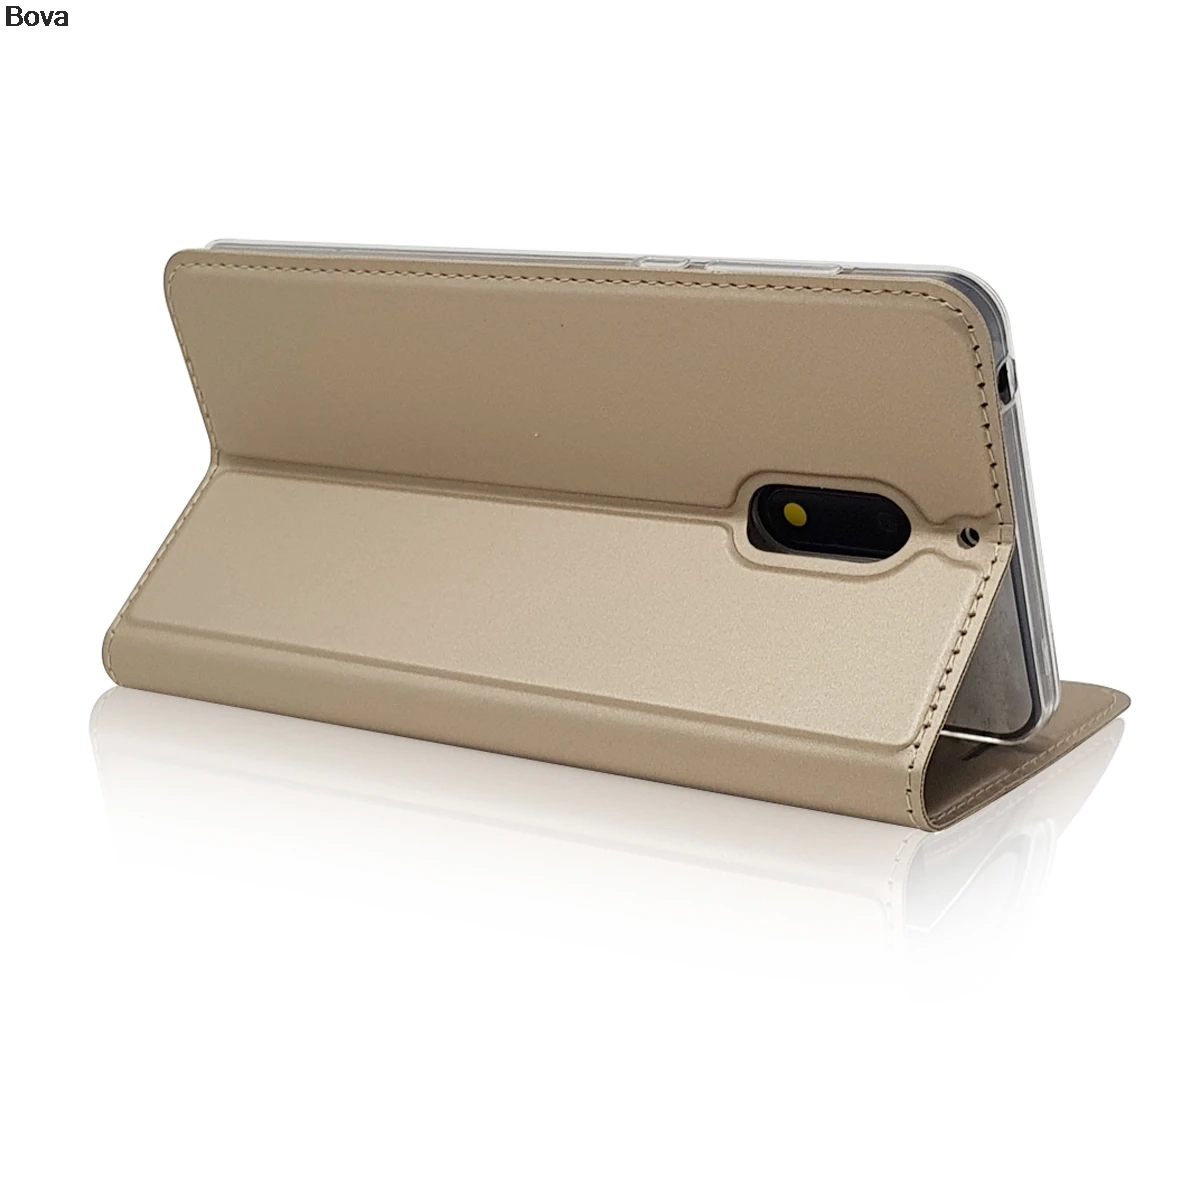 Матовый чехол-кошелек, флип-чехол для Nokia 6 5 3, магнитный адсорбционный чехол для телефона, деловой стиль